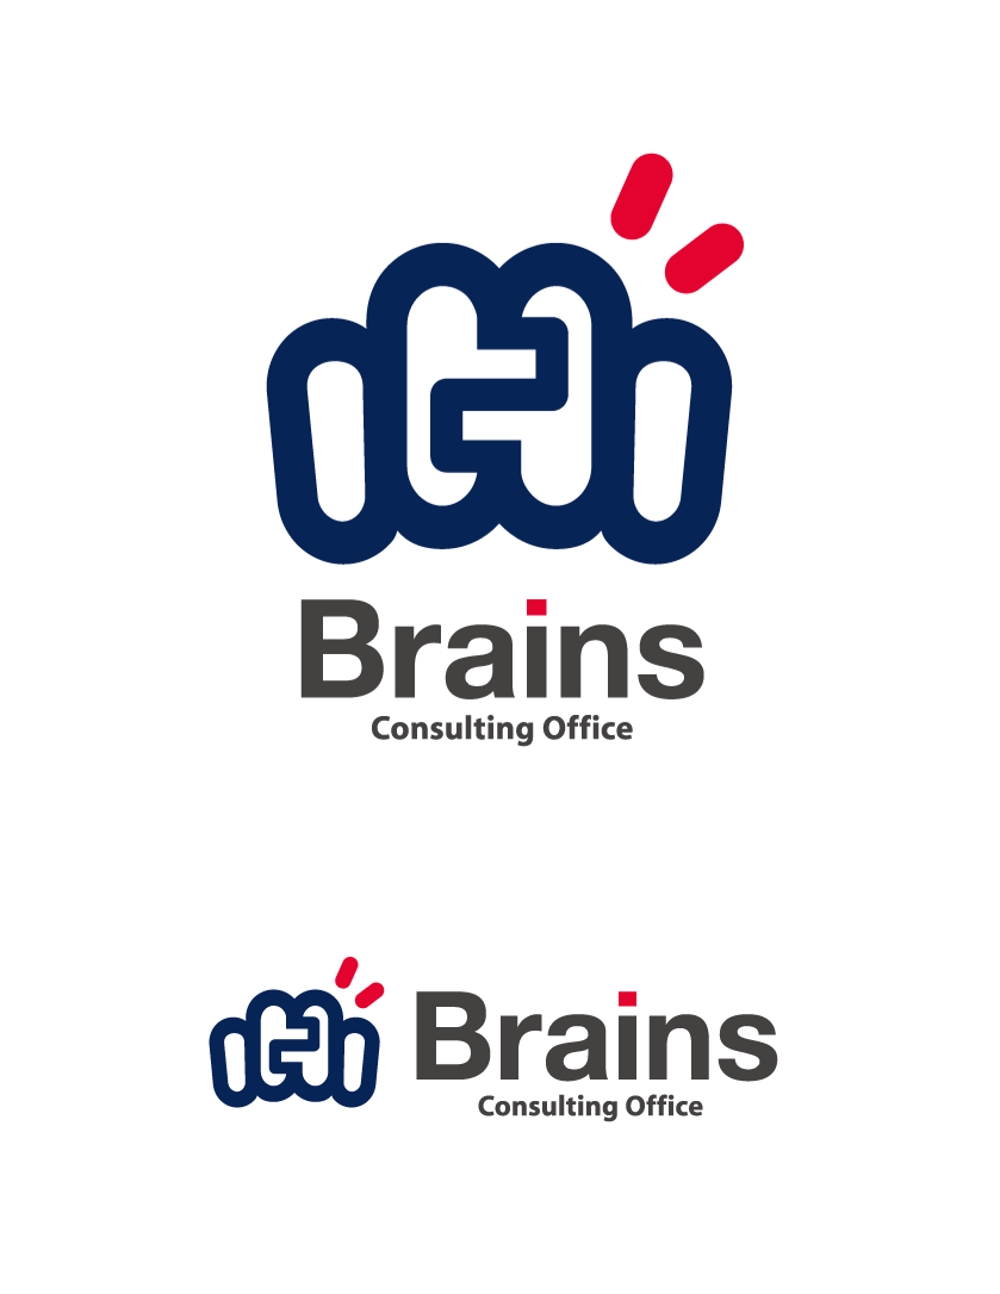 コンサルティング・オフィス(企業)のマークとロゴ